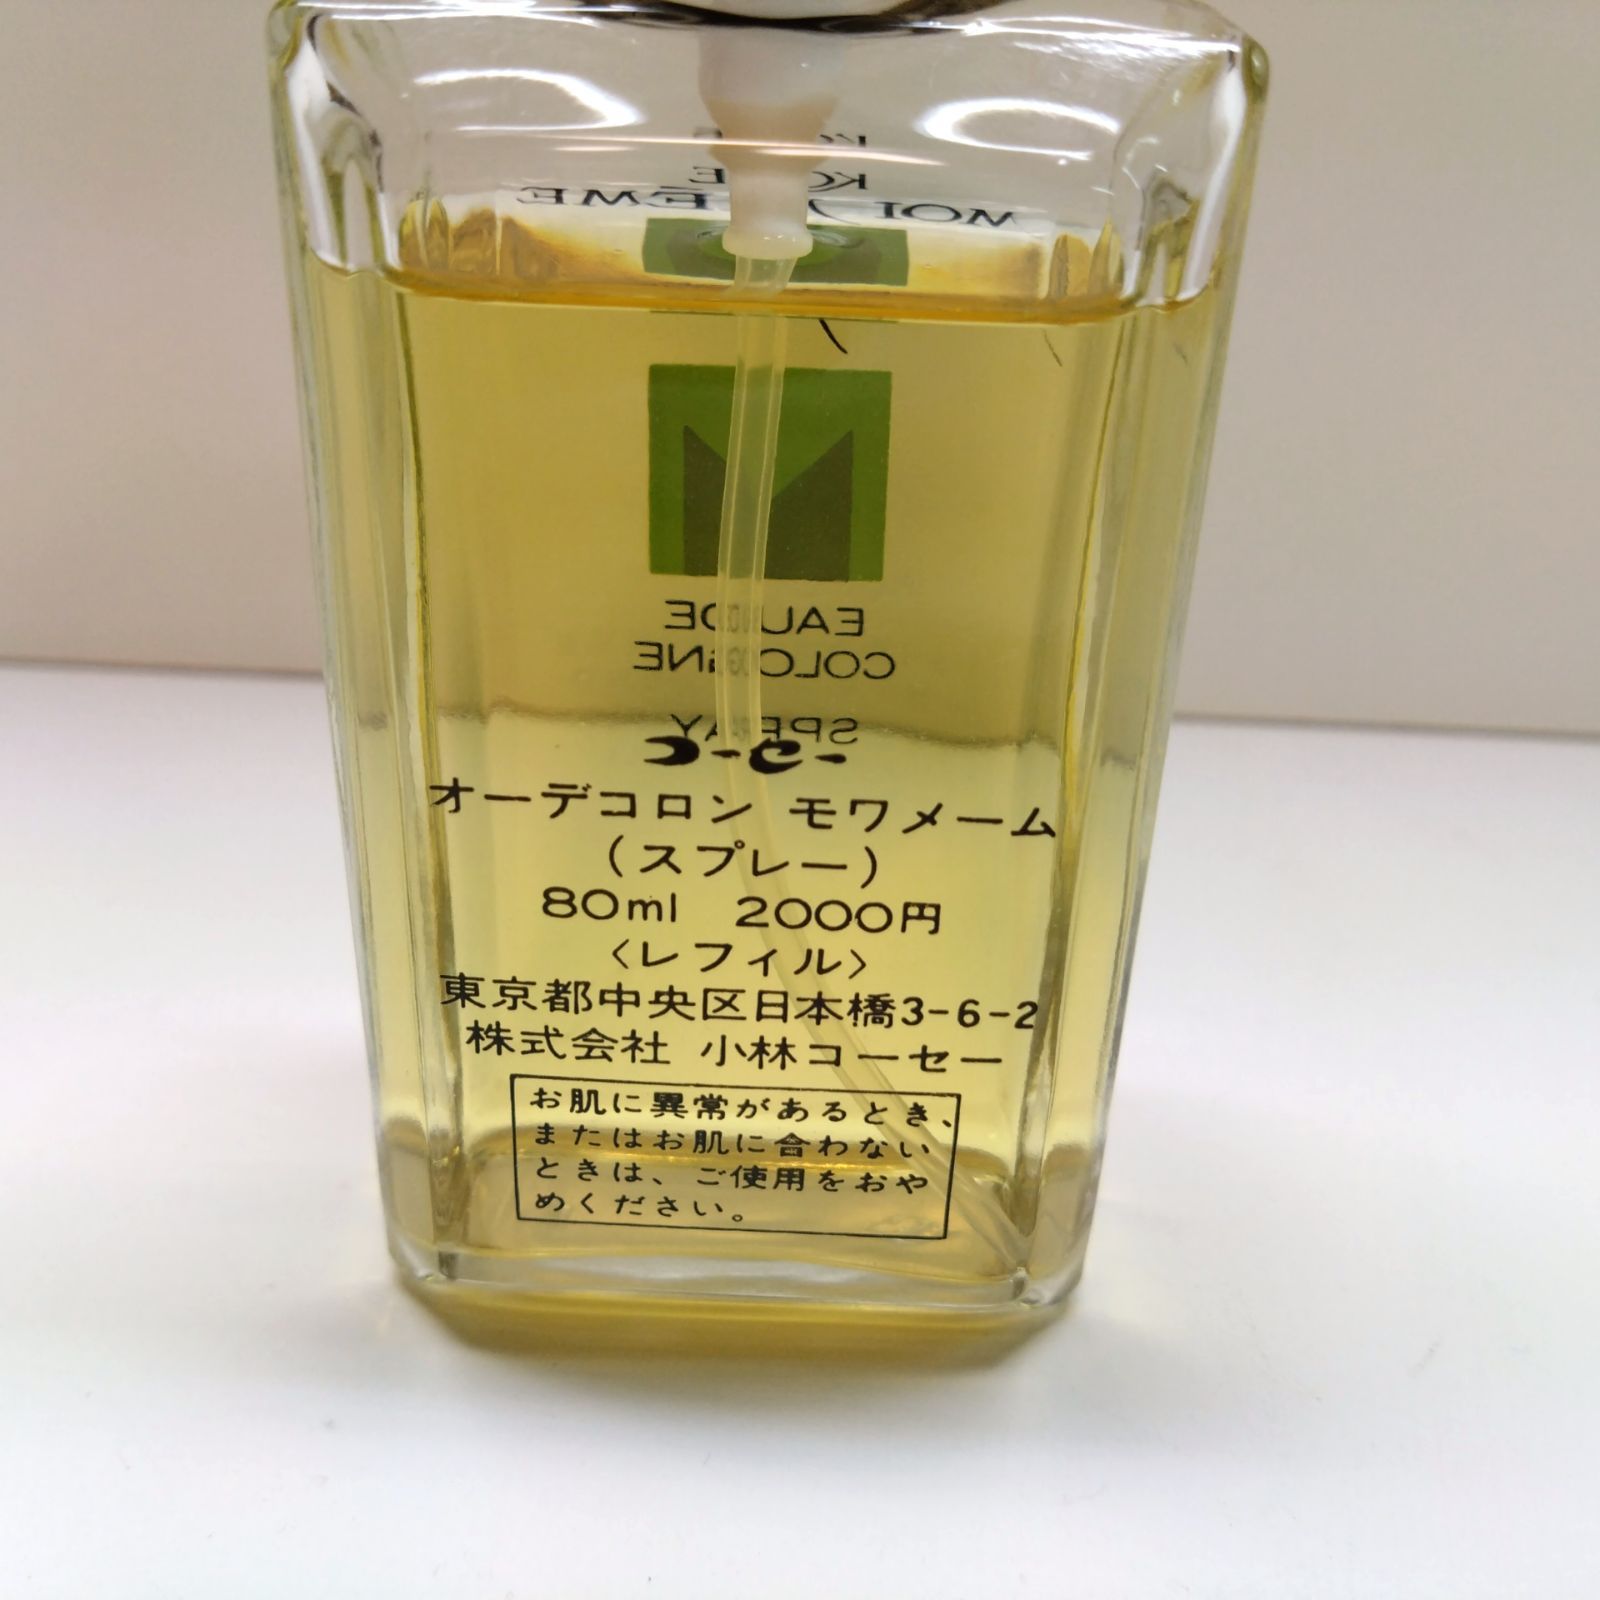 コーセー オーデコロン モワメーム 80ml - 香水(ユニセックス)